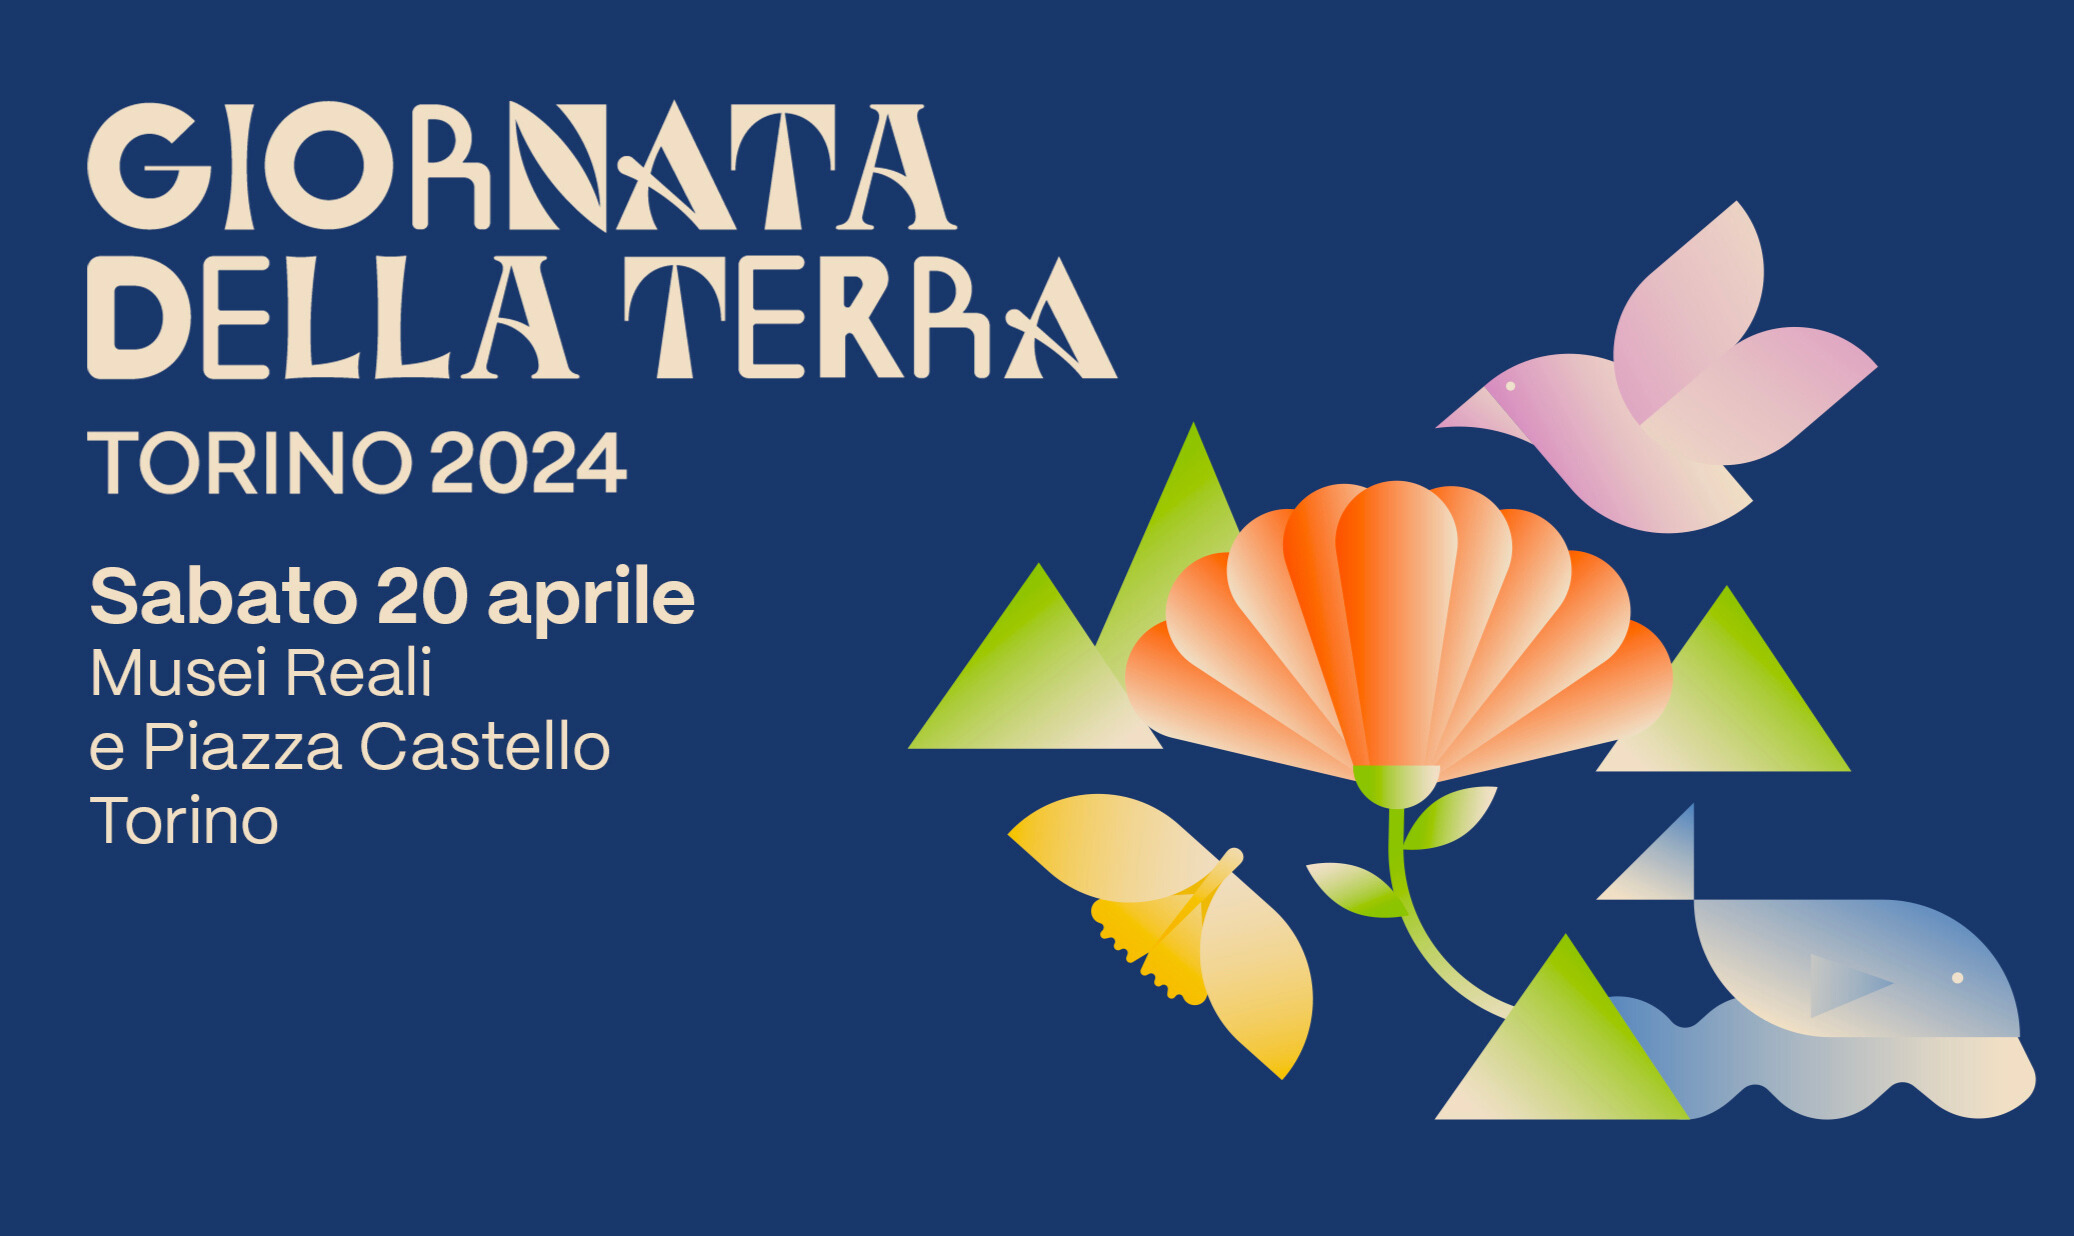 Giornata della Terra - Torino 2024